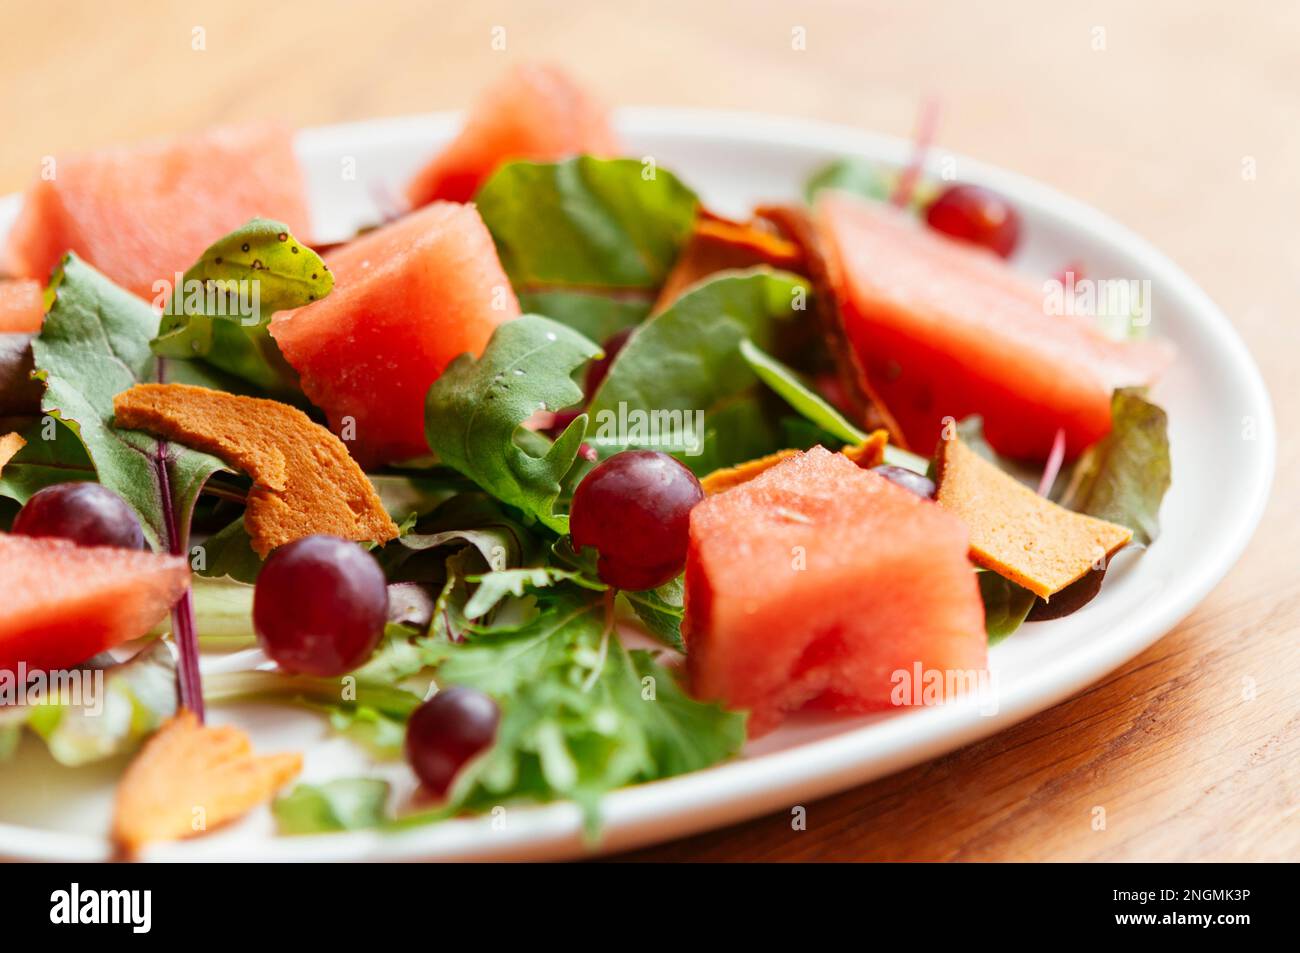 Mixed Salad wih Watermelon, Grapes and Vegan  Bologna Stock Photo